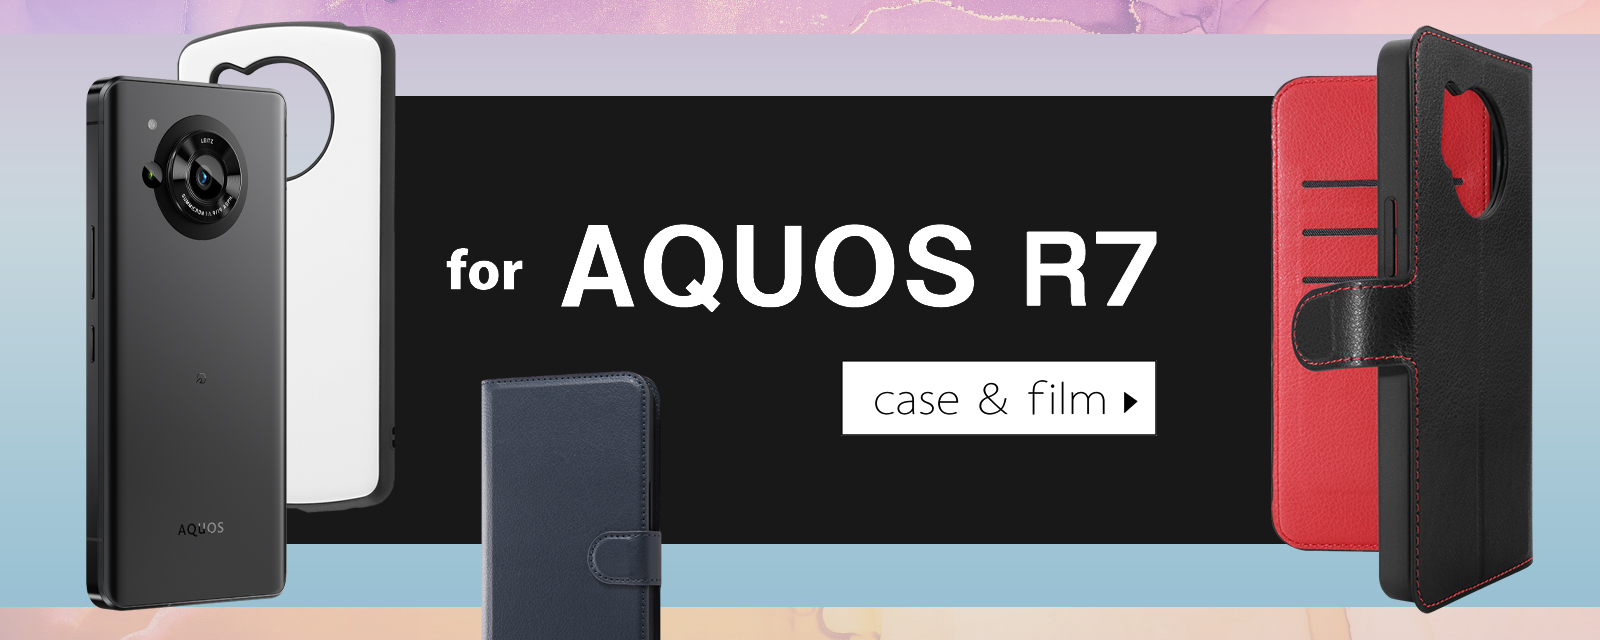 AQUOS R7、AQUOS WISH2に対応したスマホケース・保護フィルムが株式会社レイ・アウトよ... 画像